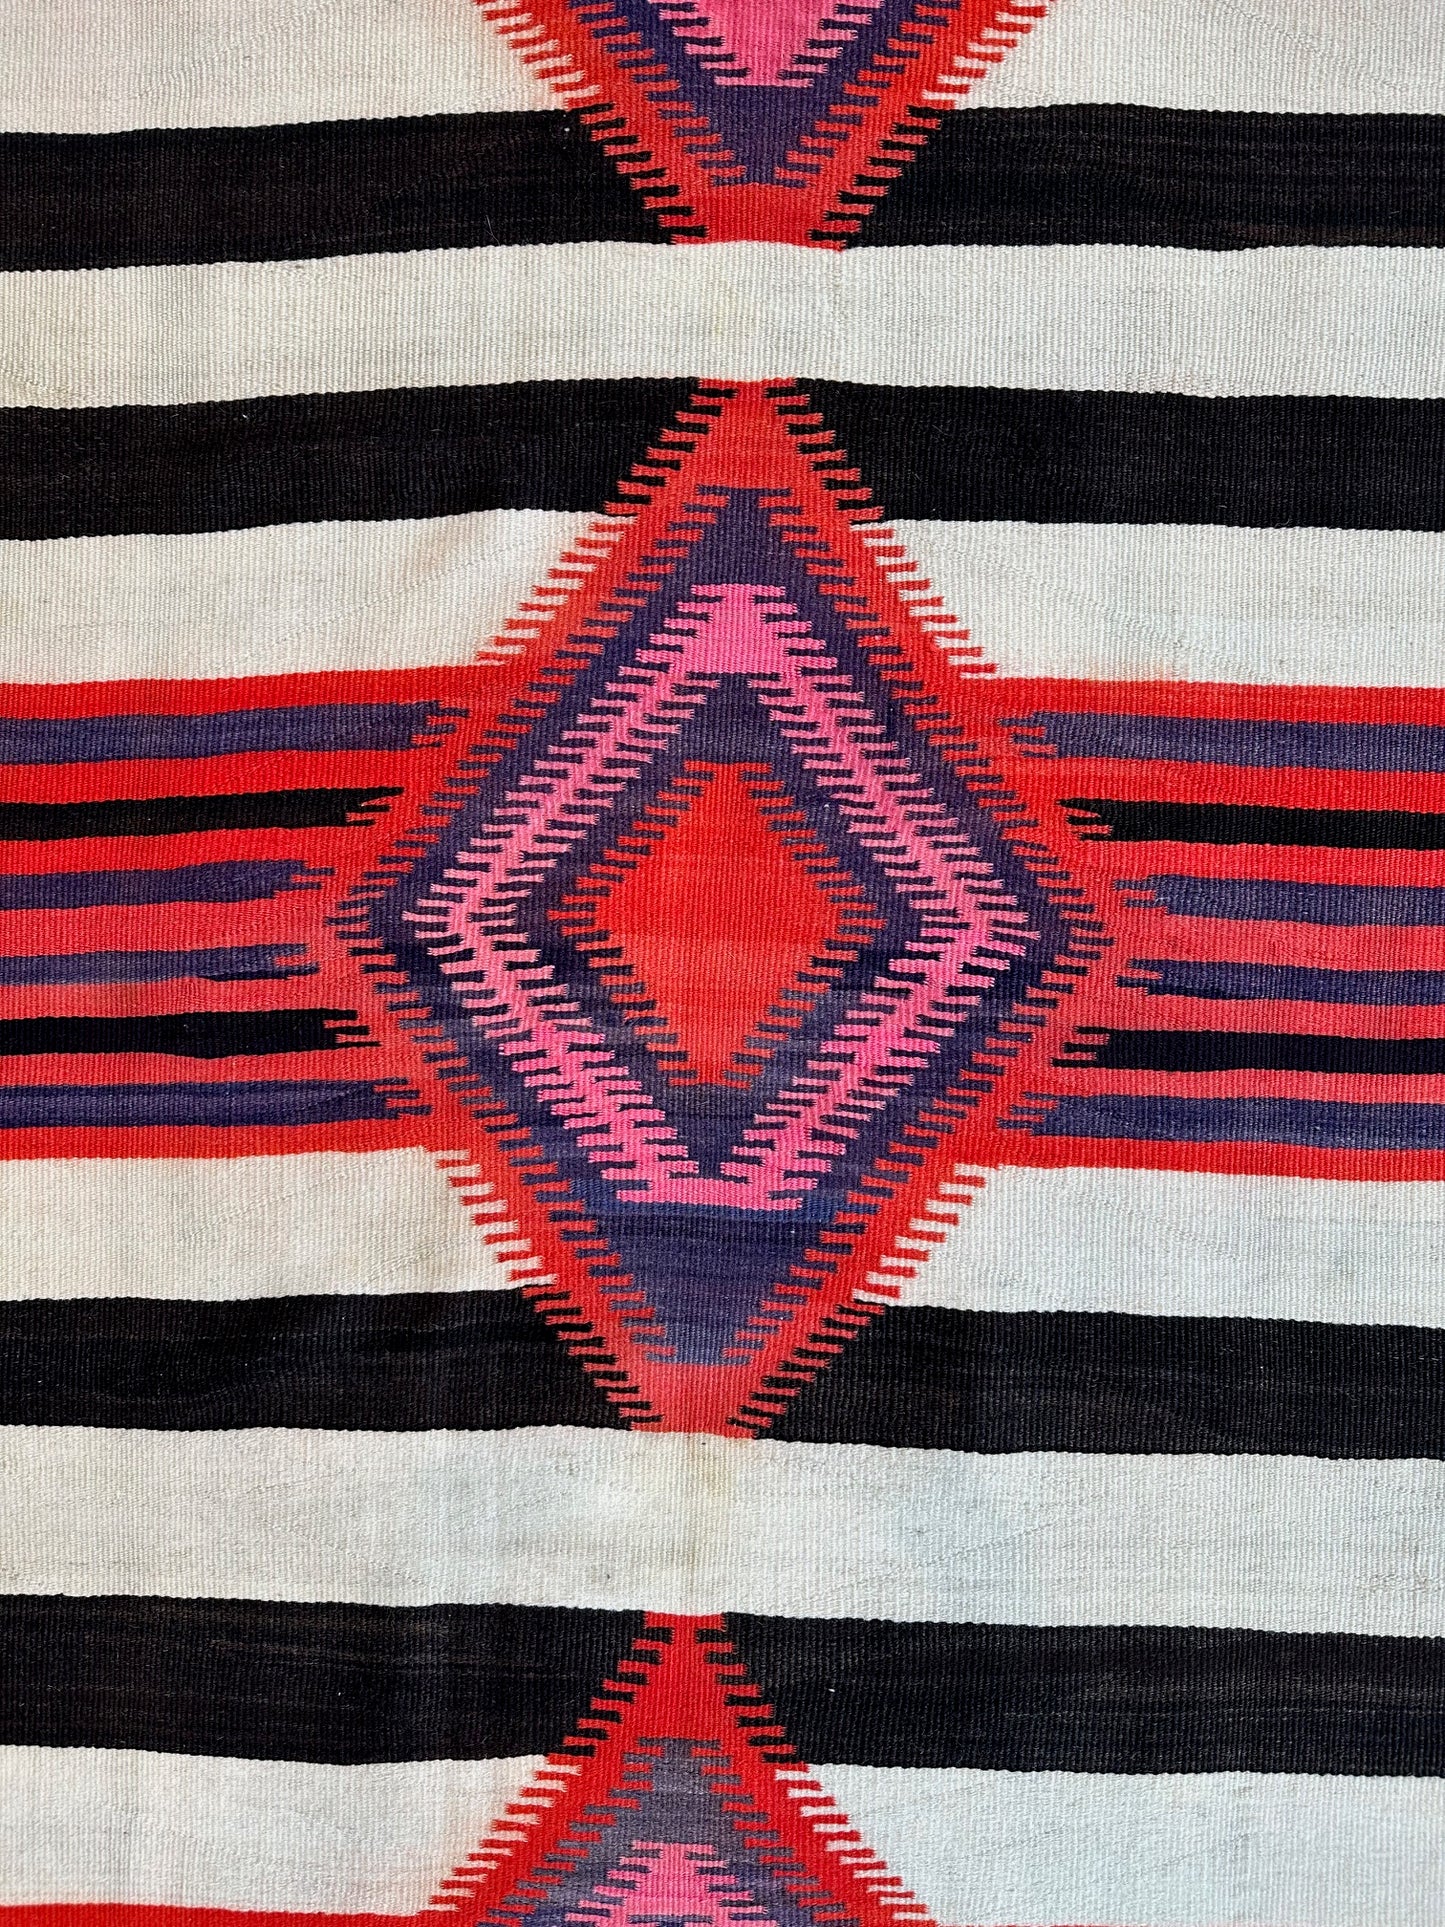 Antique Navajo Germantown 3rd Phase Chief's Blanket , navajo rug for sale, authentic navajo weaving, telluride furnishings, telluride art gallery